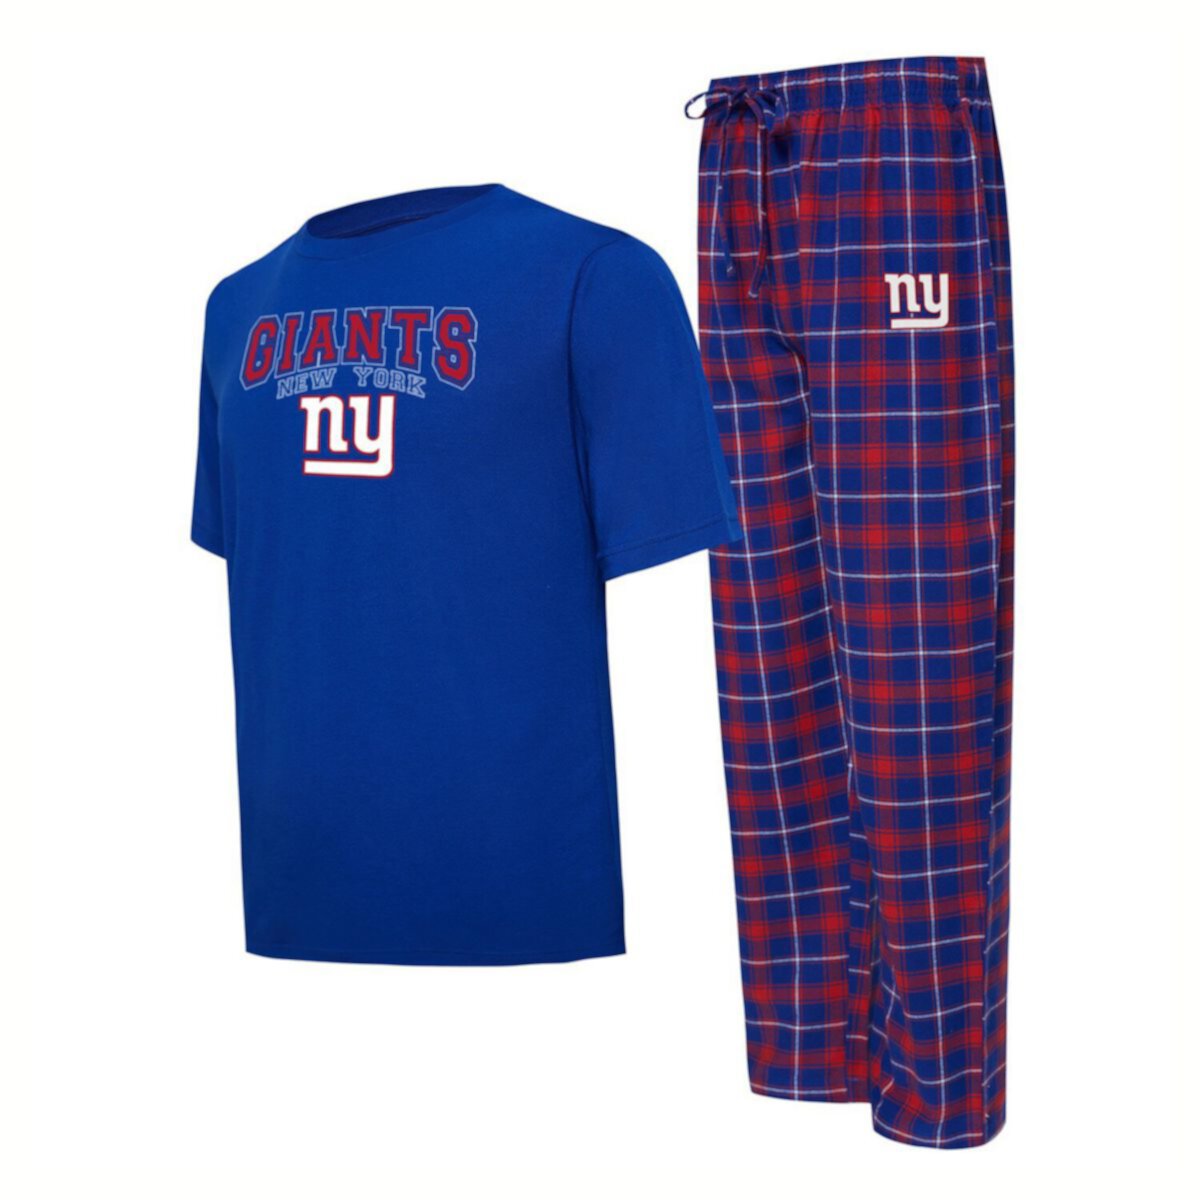 Мужская футболка Concepts Sport Royal/красная футболка New York Giants Arctic и пижамные штаны для сна Unbranded